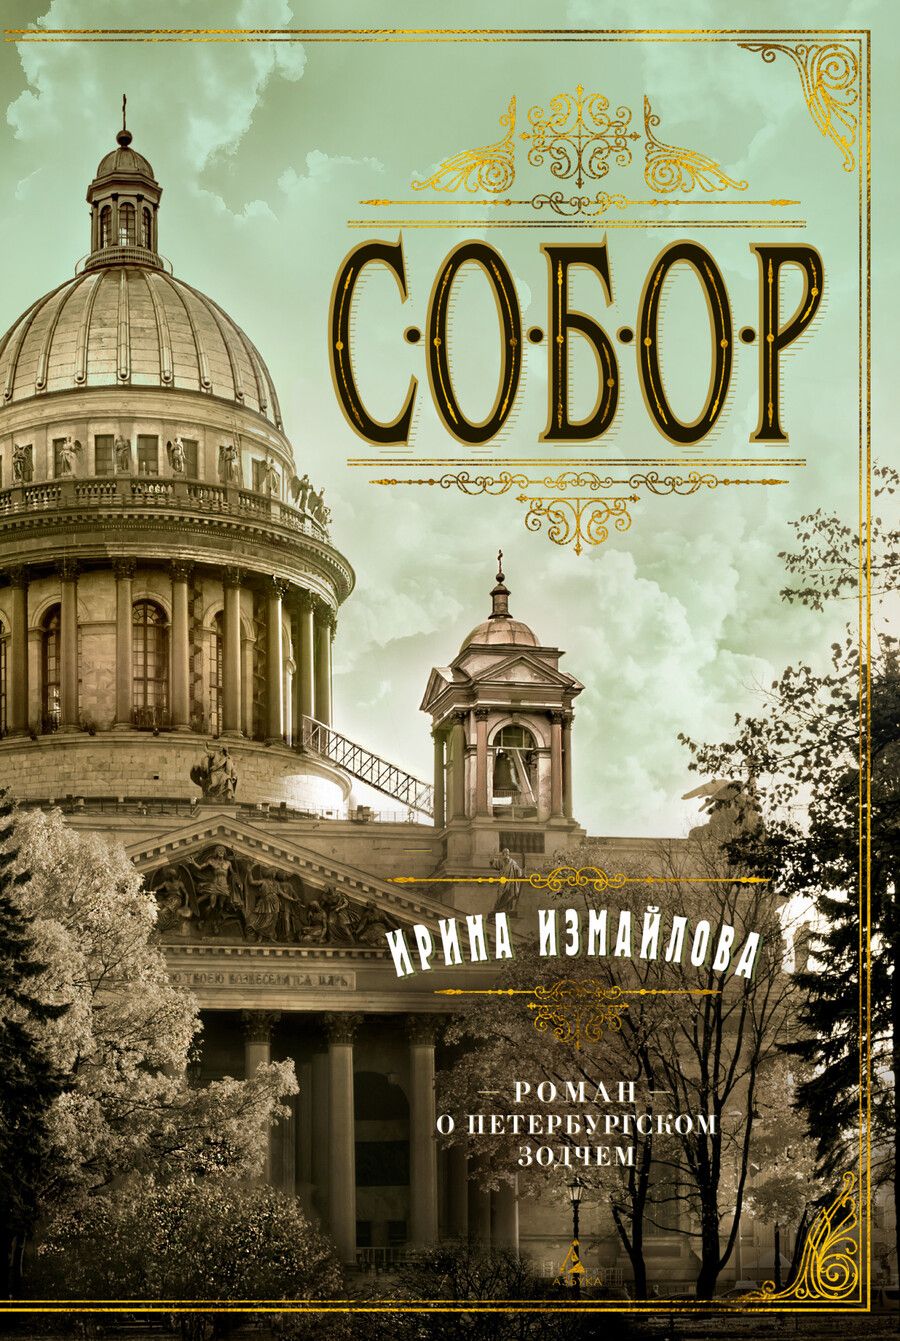 Обложка книги "Измайлова: Собор. Роман о петербургском зодчем"